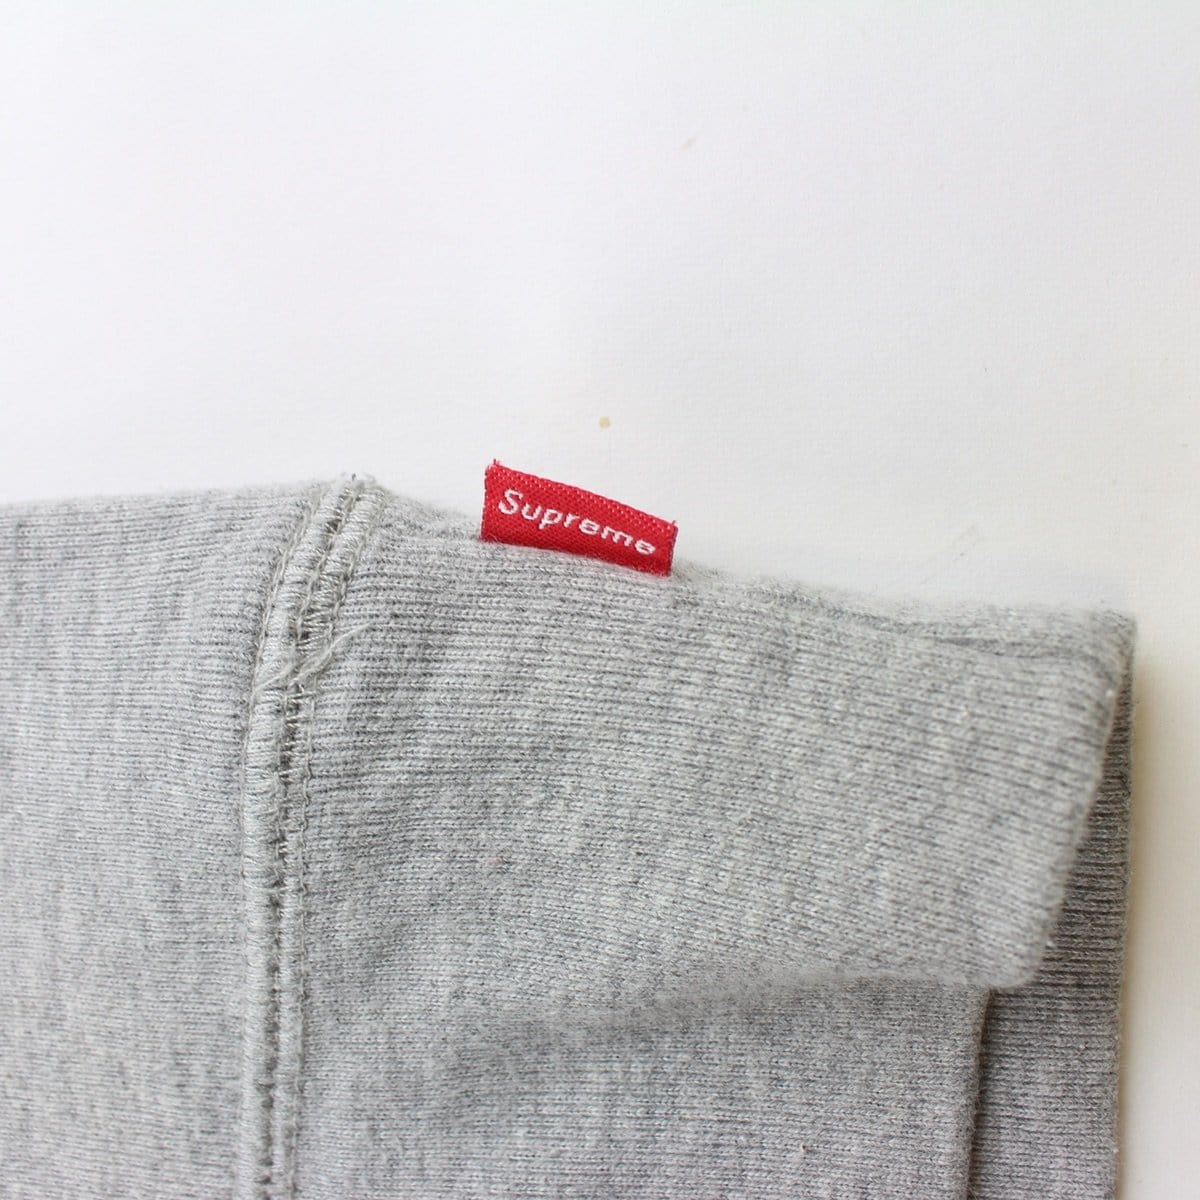 supreme bling box logo hoodie grey XL - SaruGeneral